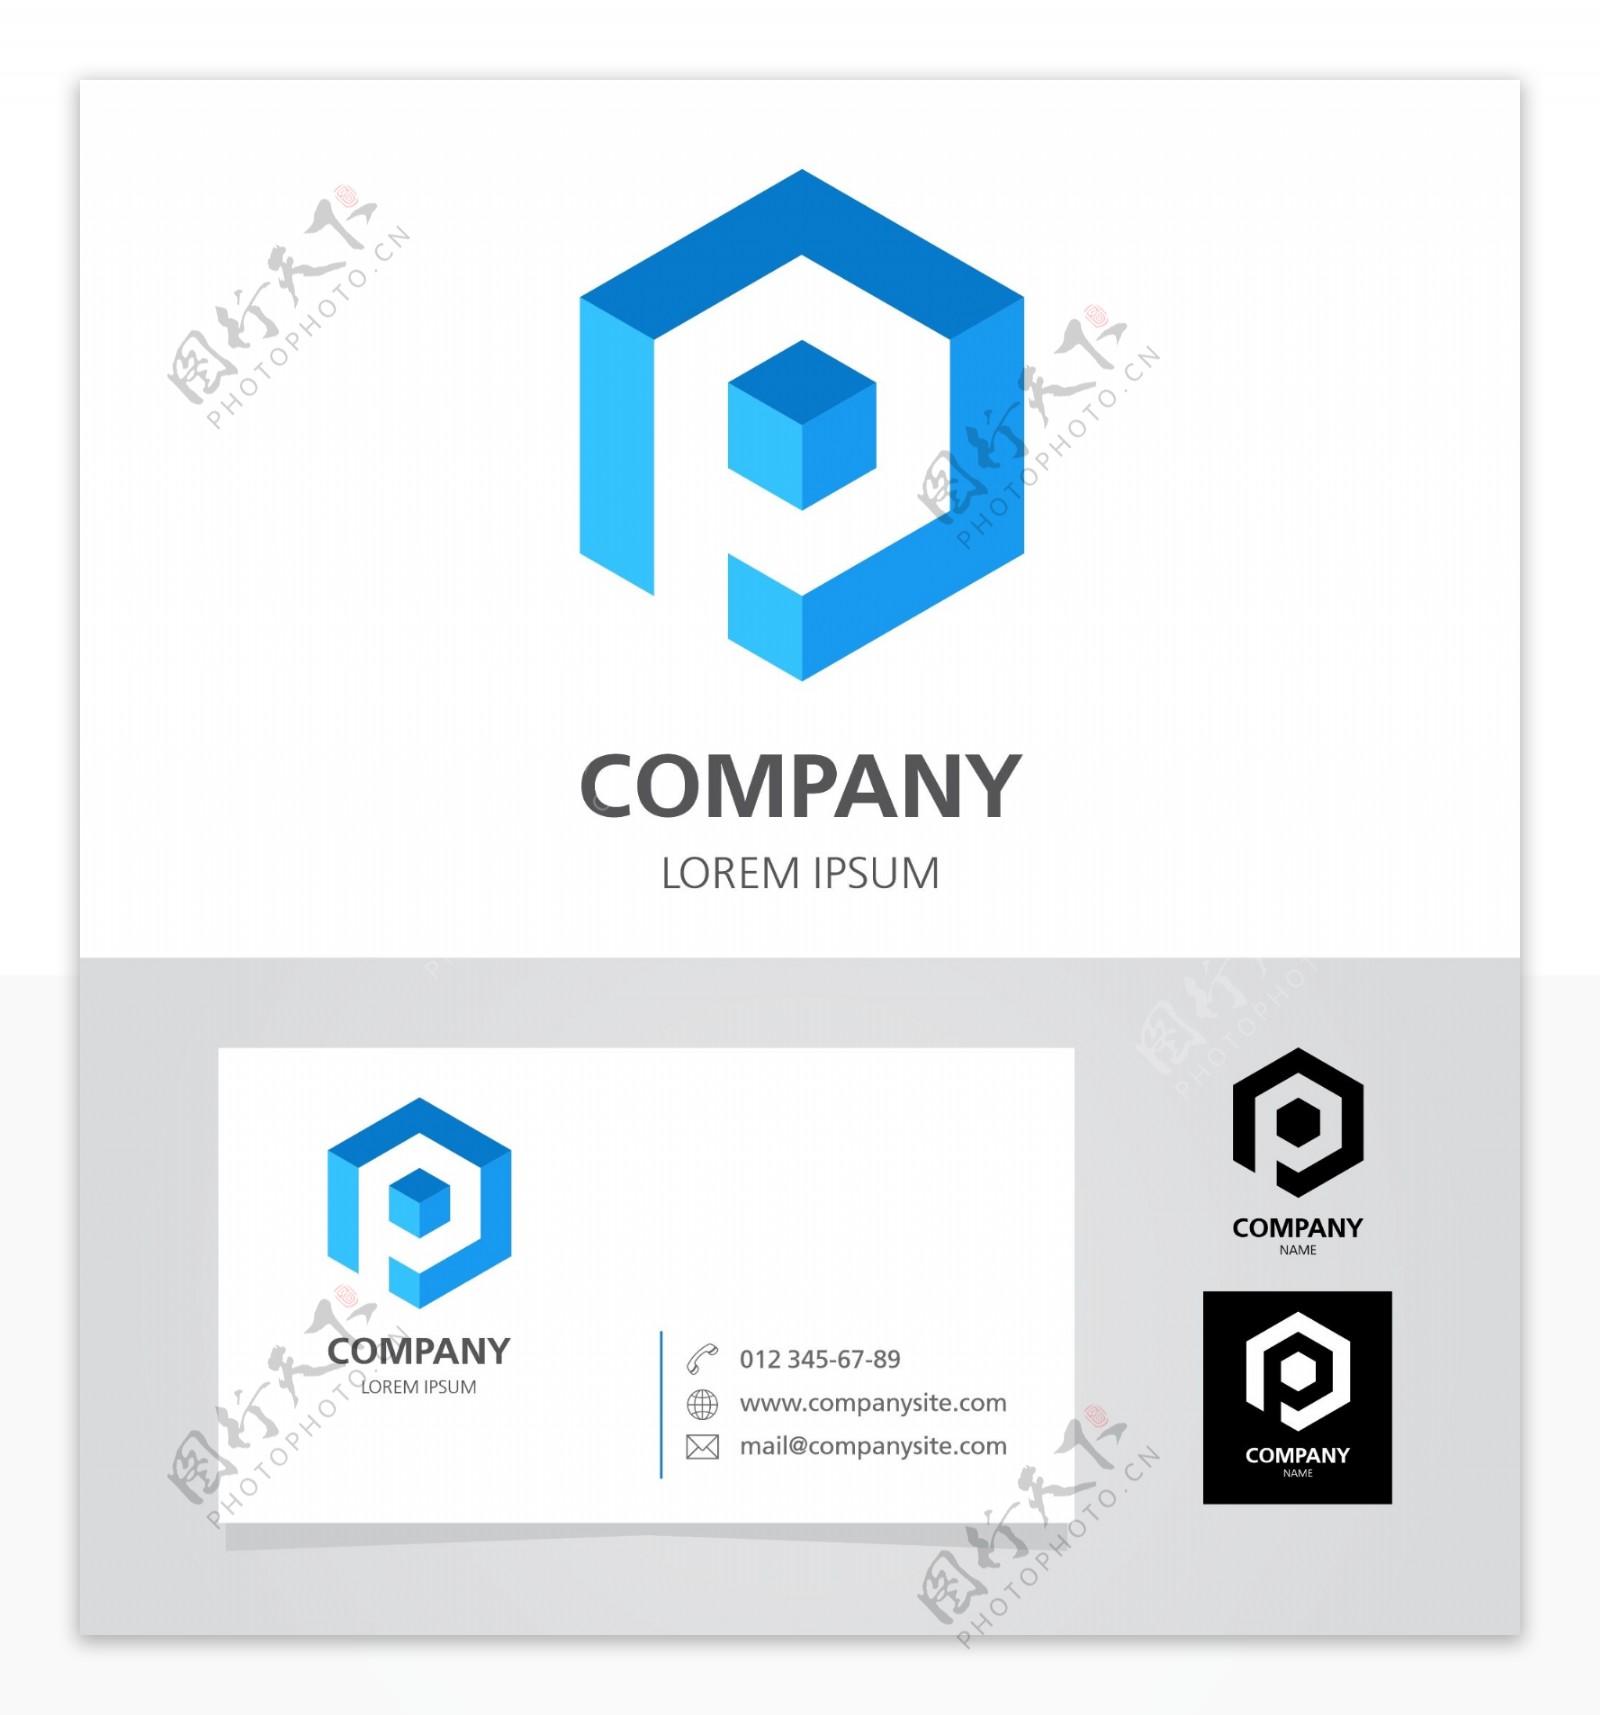 互联网企业通用标识logo